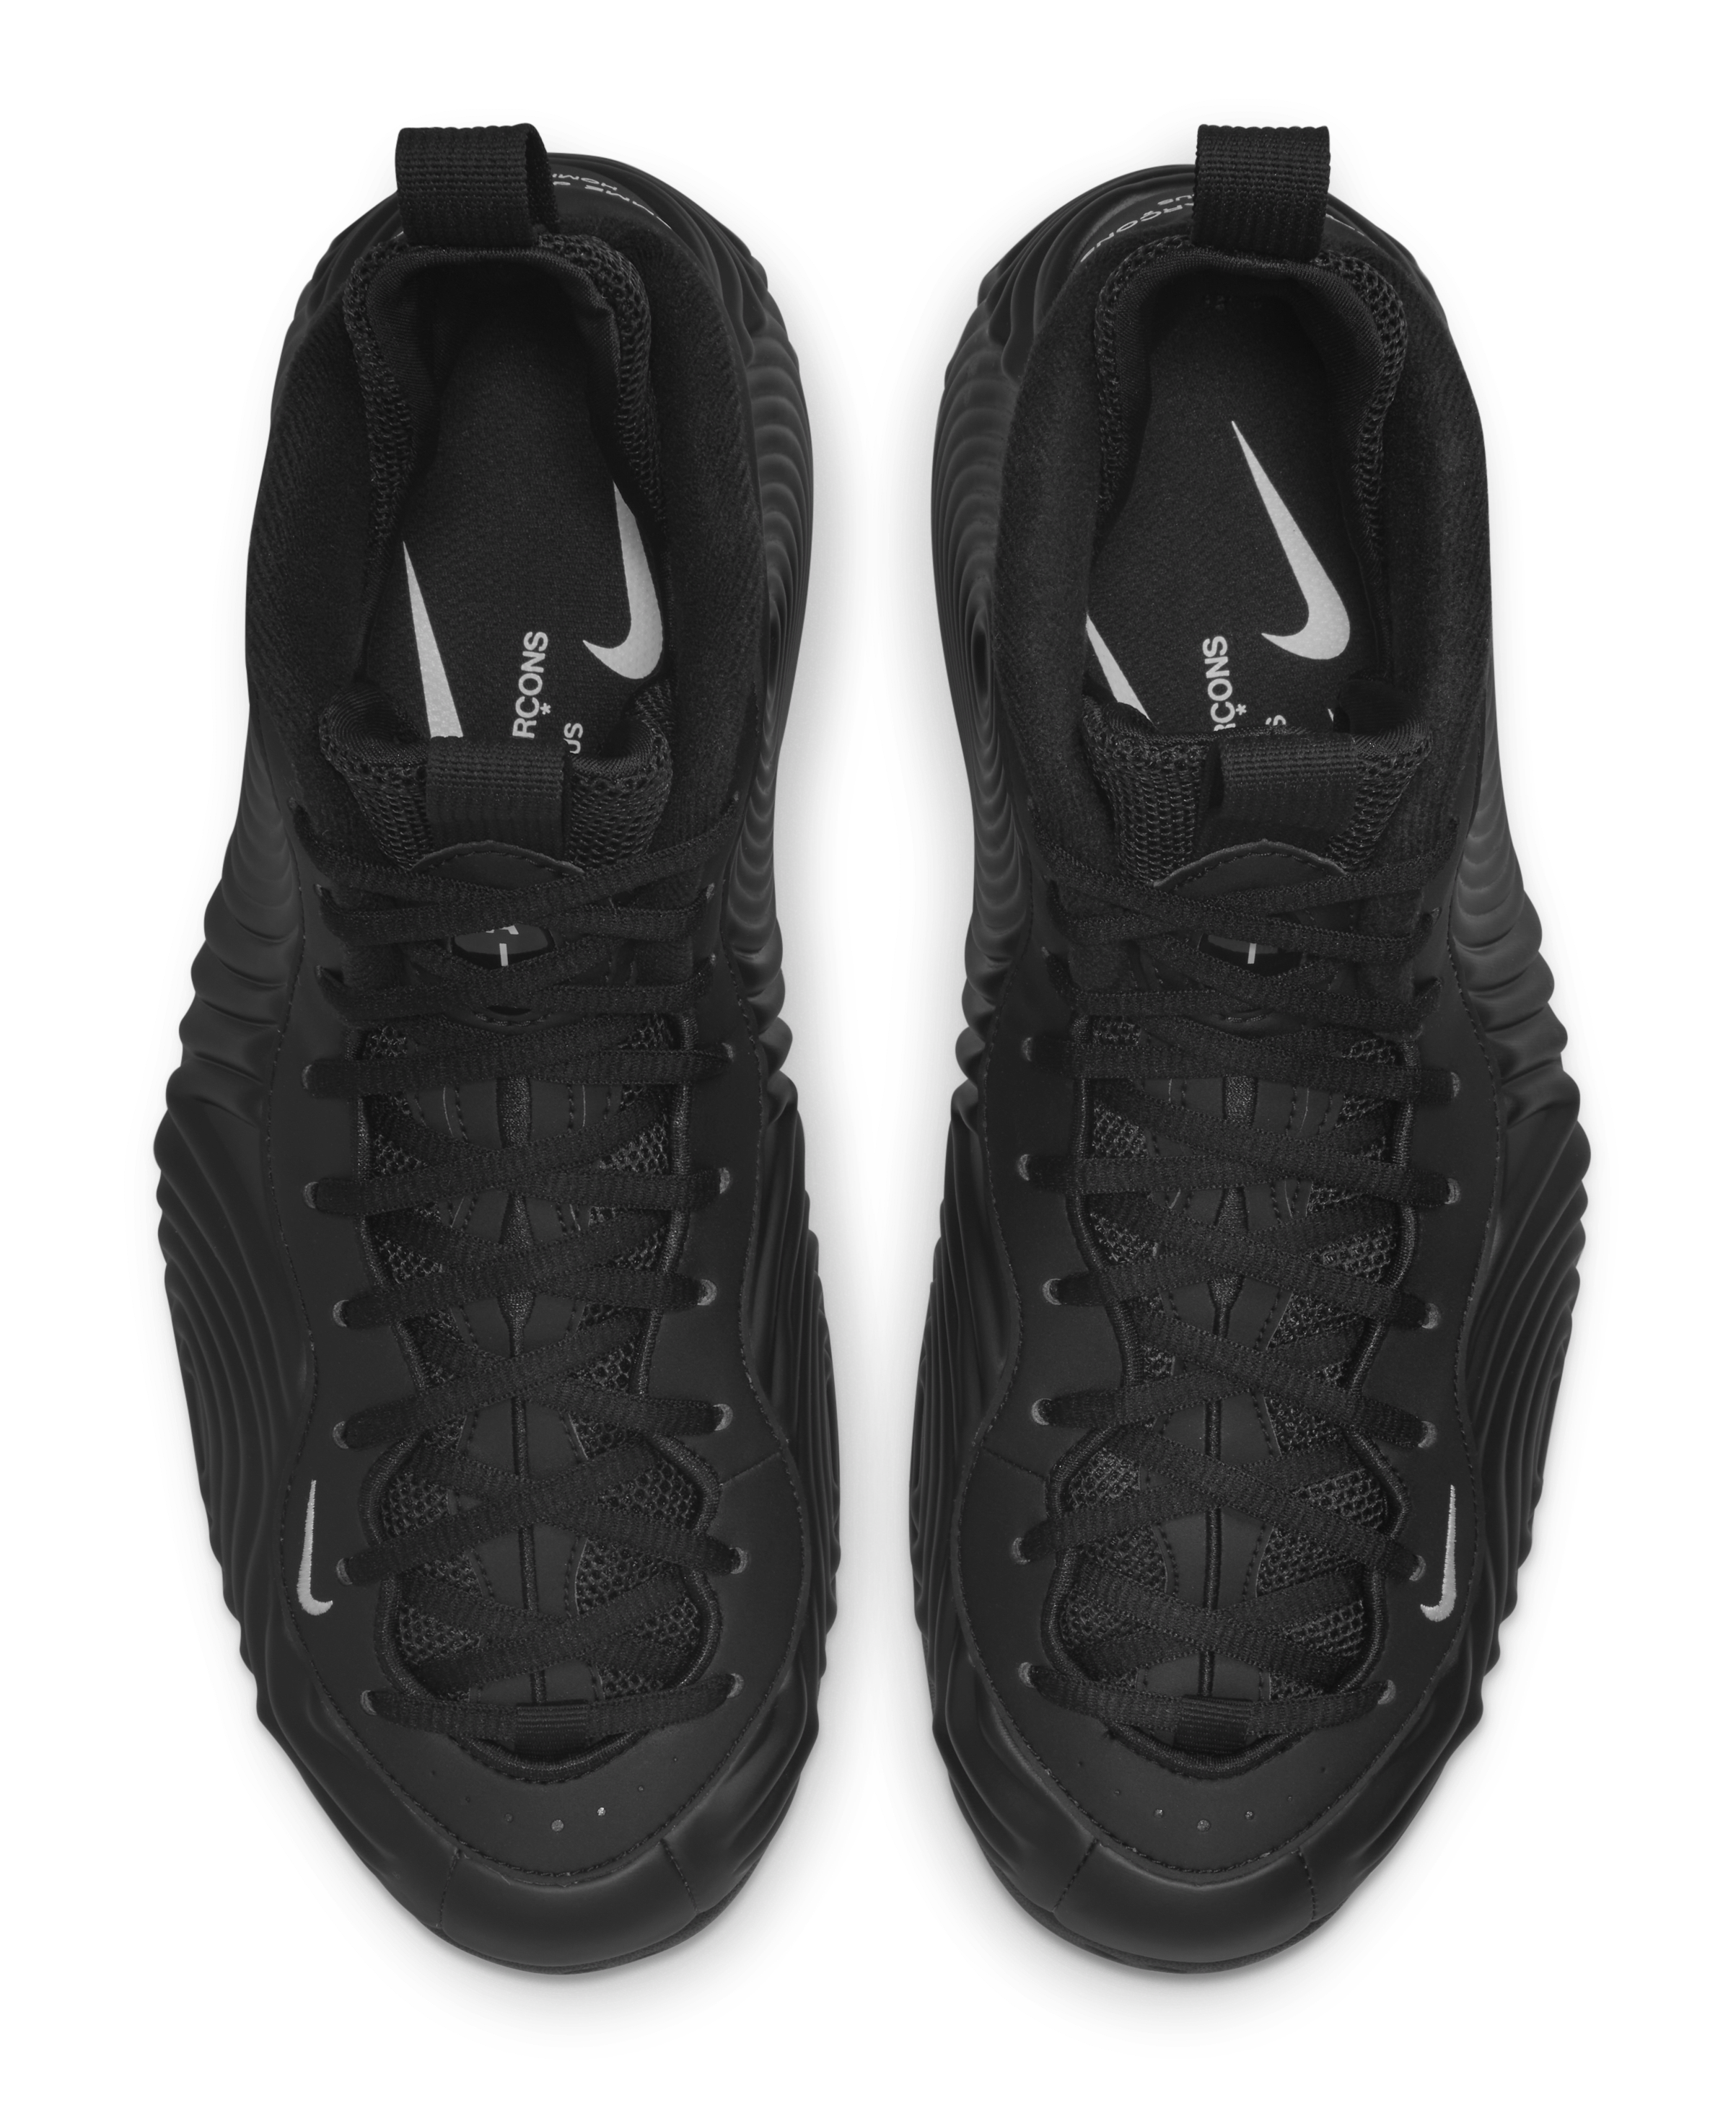 Comme des Garçons' Nike Foamposite Collab Gets an Official Release